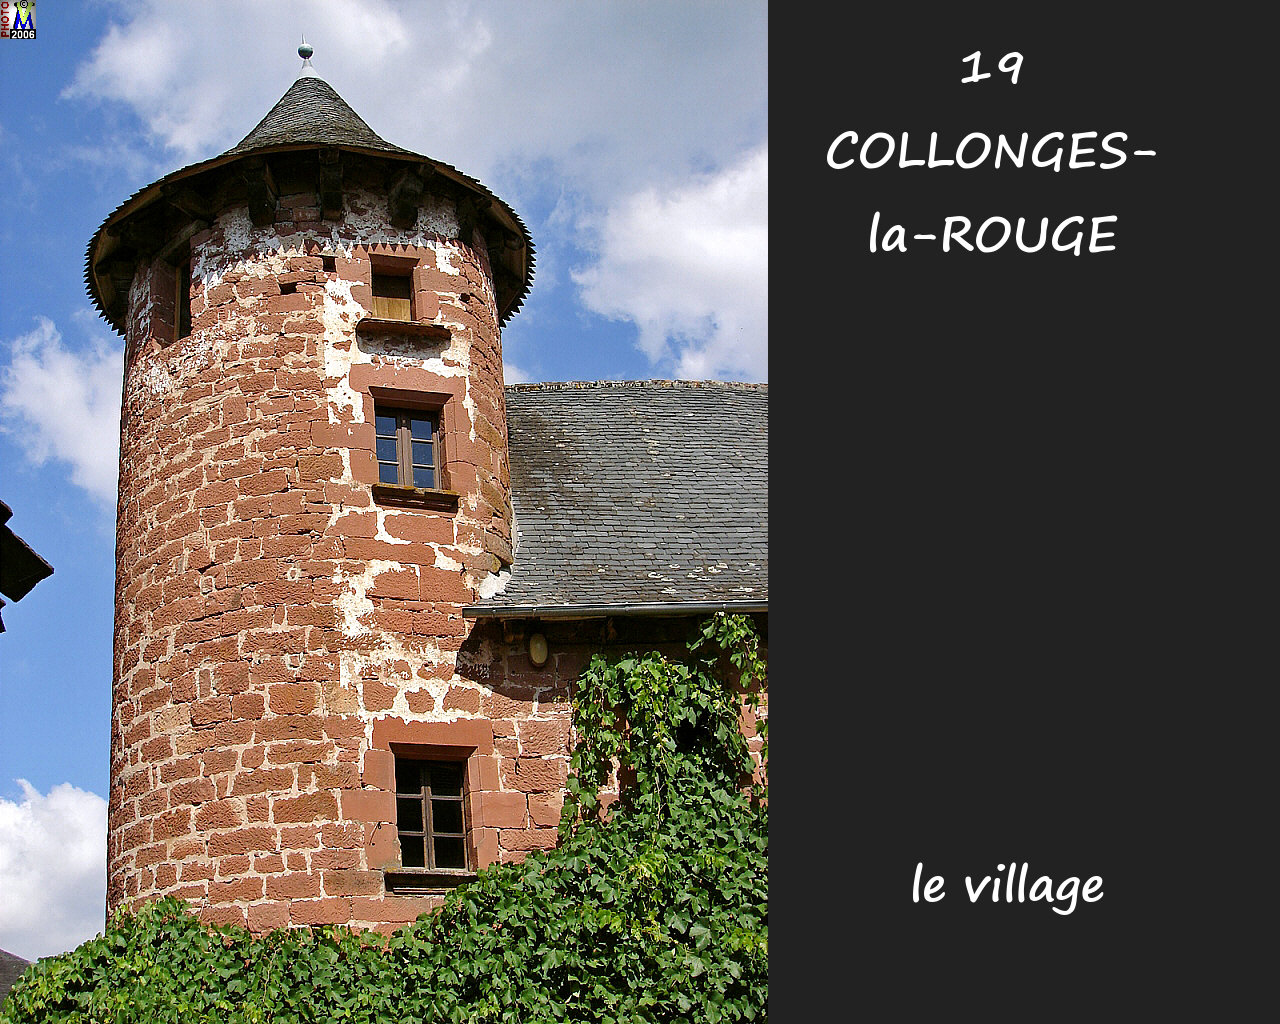 19COLLONGES-ROUGE_village_116.jpg